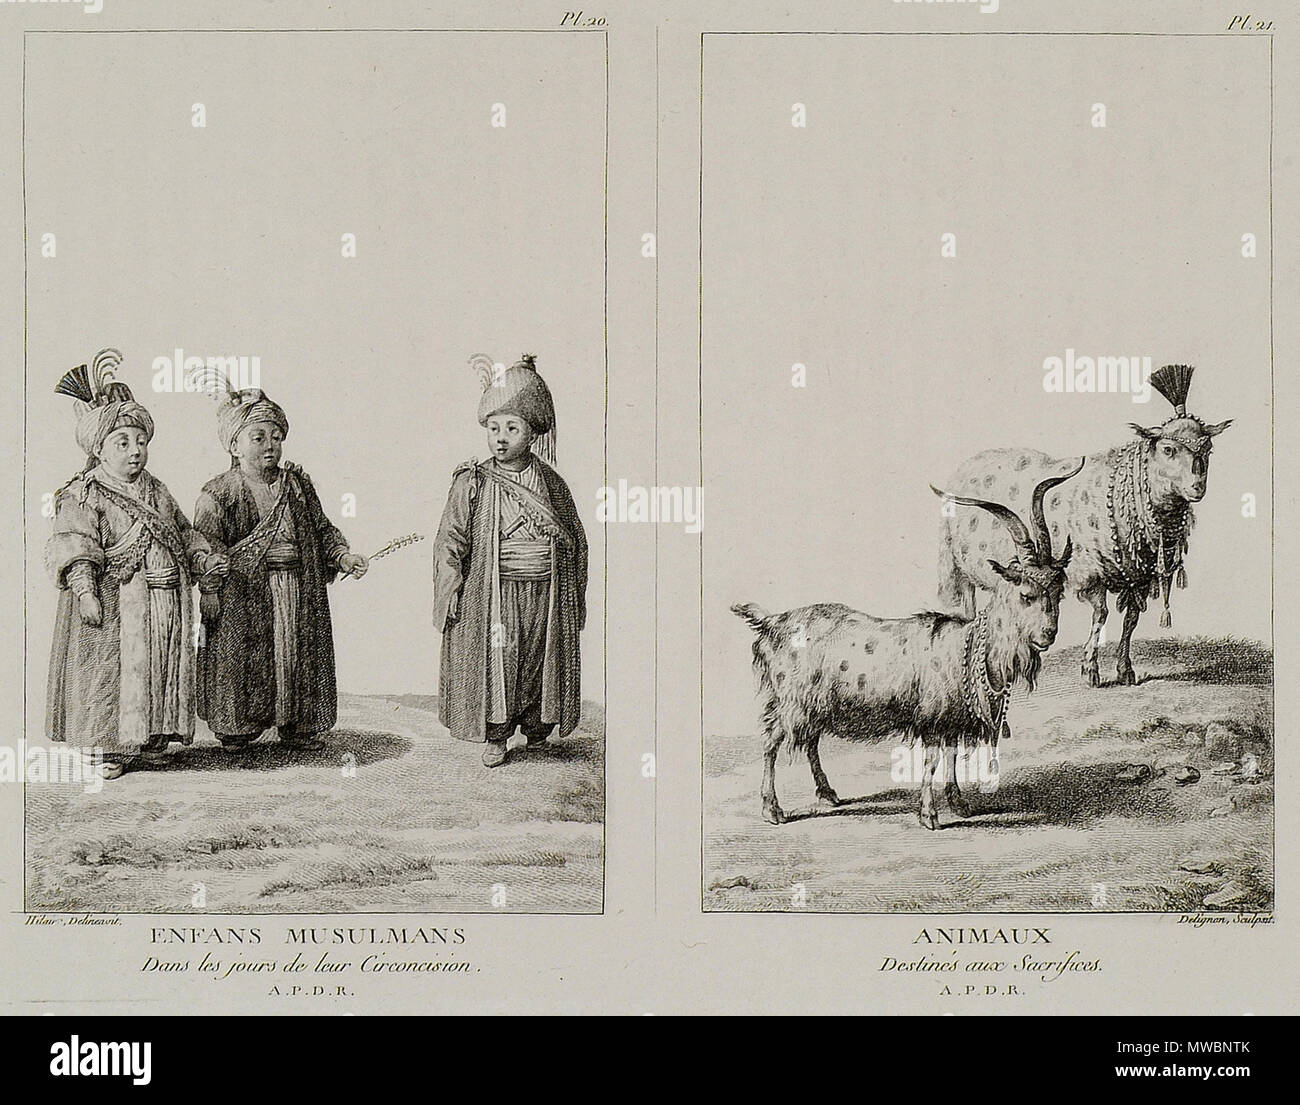 190 Enfans Musulmans dans les Jours de Leur circoncision Animaux destinés aux Opfer - Mouradgea D'ohsson - 1787 Stockfoto